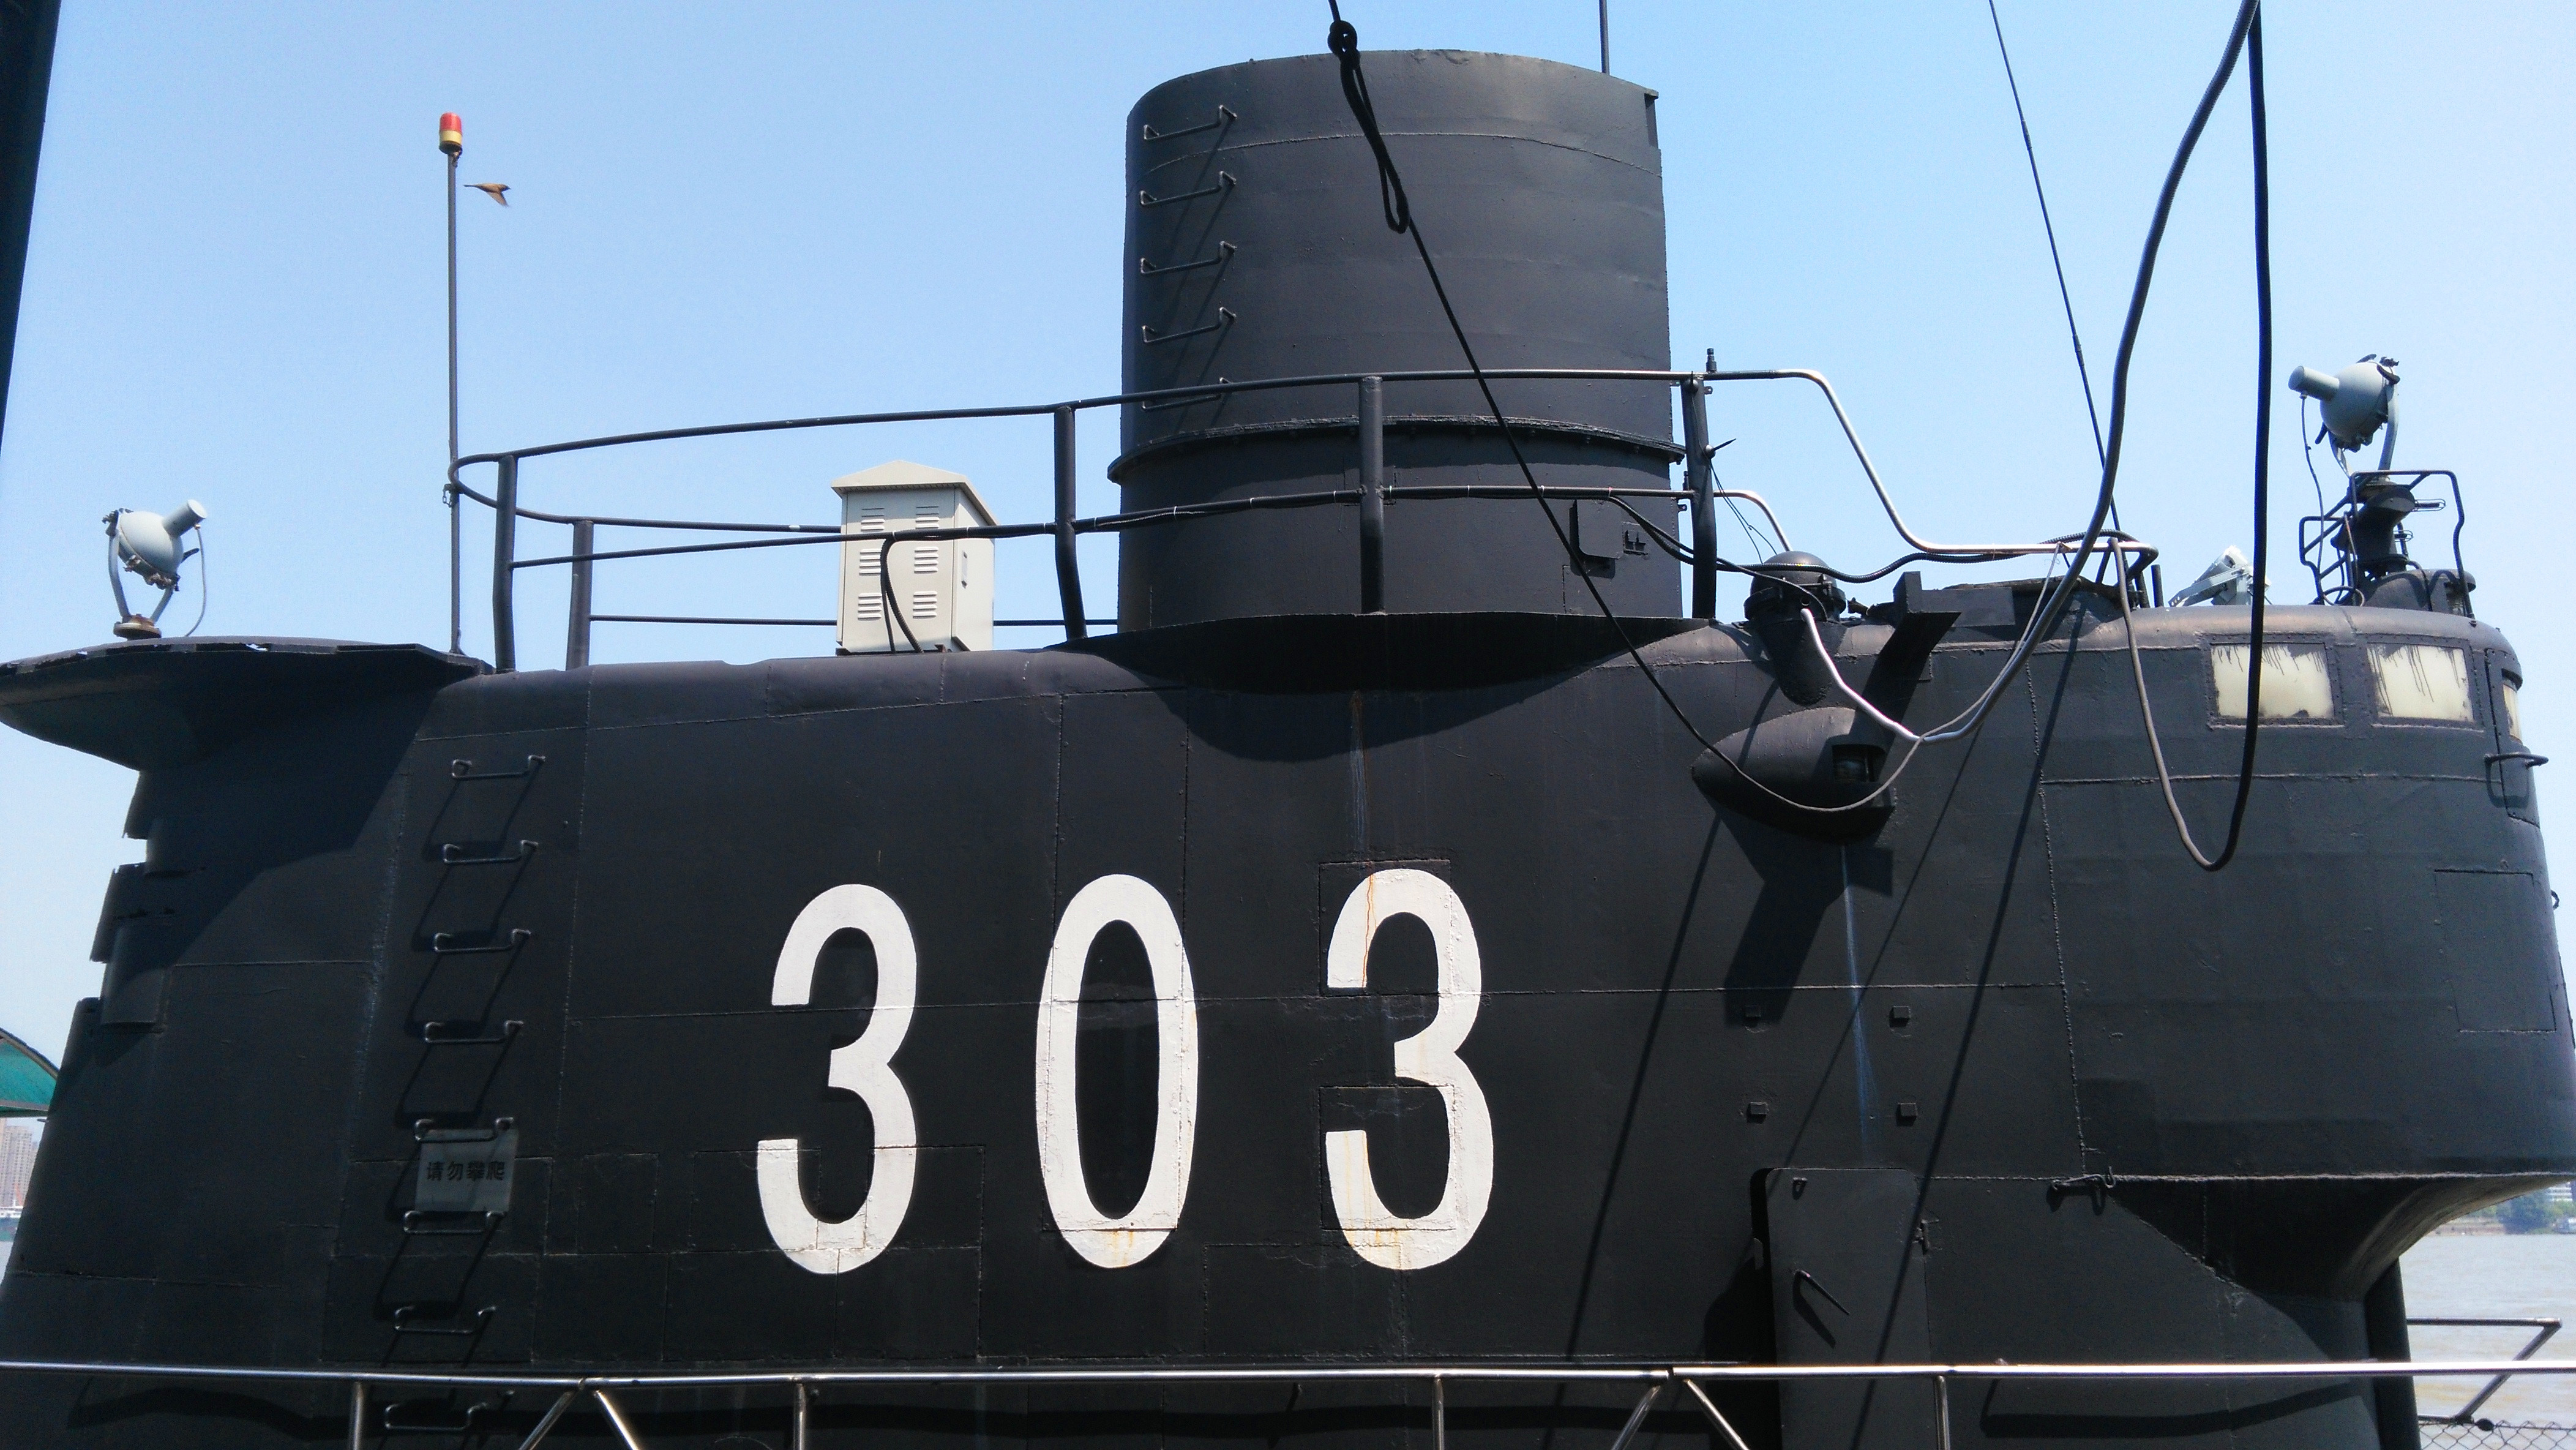 【游记】神秘的潜艇世界 武汉港303潜水艇探访之旅